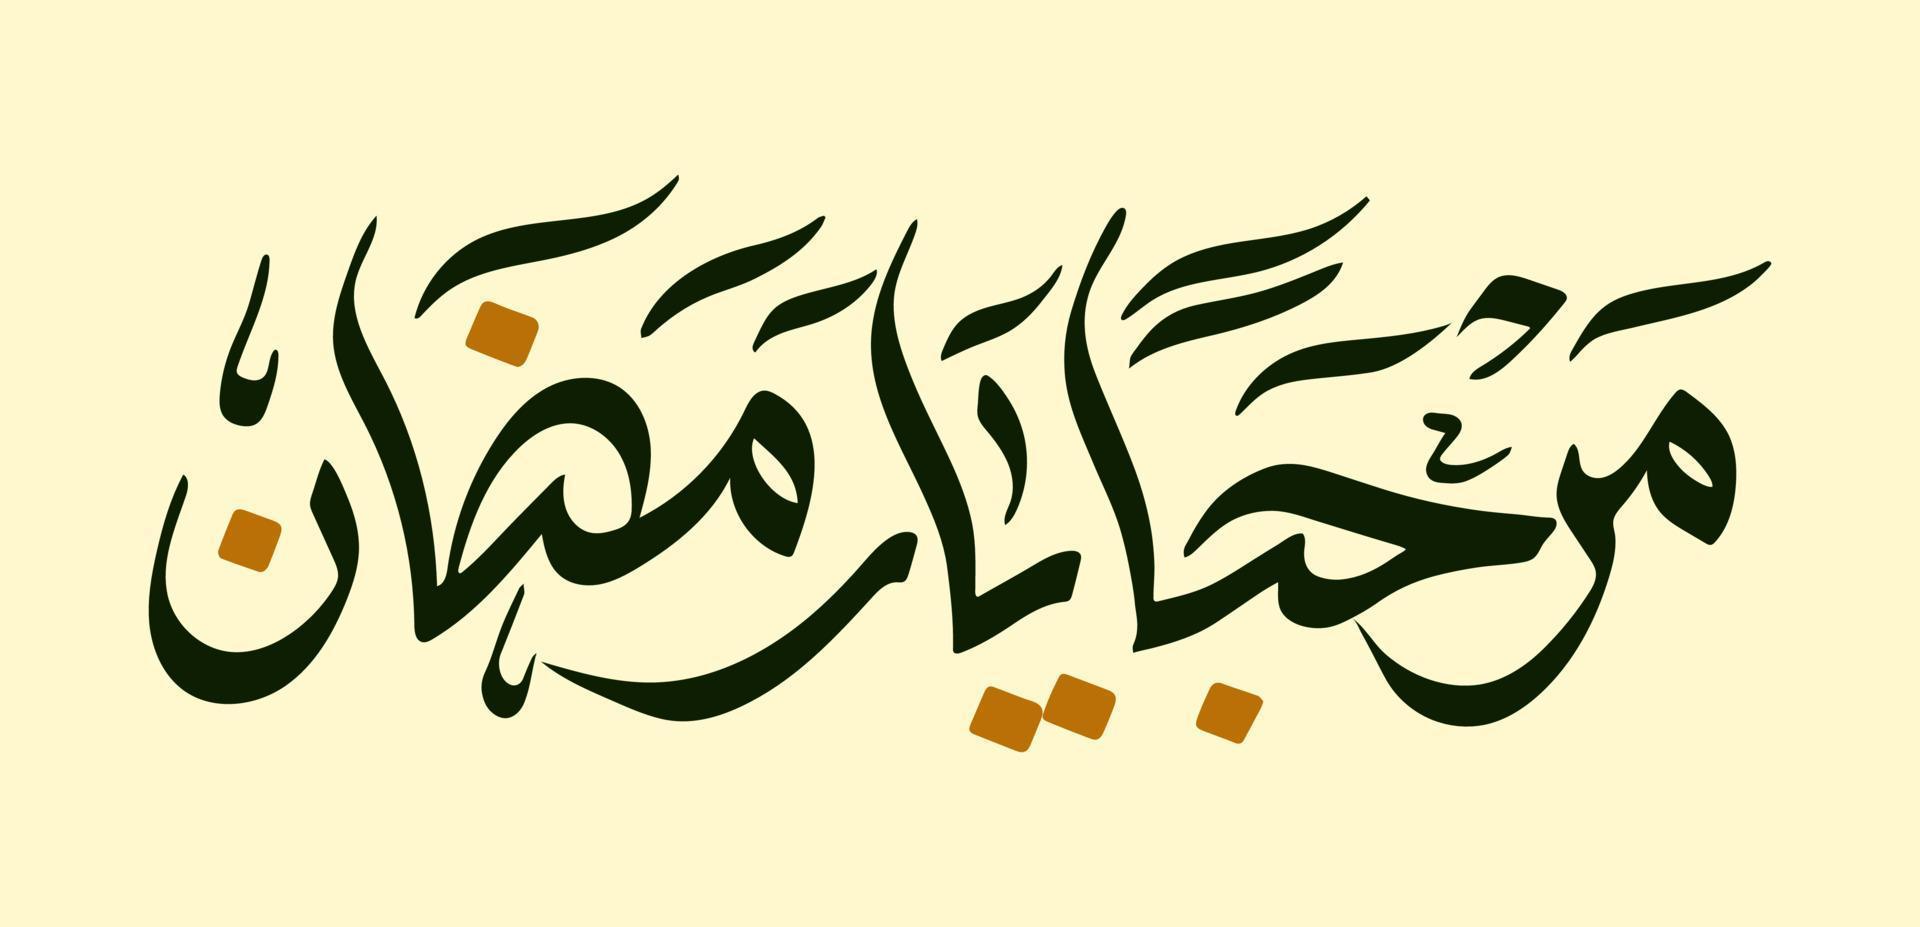 Marhaban ya Ramadan Arabisch Kalligraphie Beschriftung meint herzlich willkommen oder Hallo Ramadhan vektor